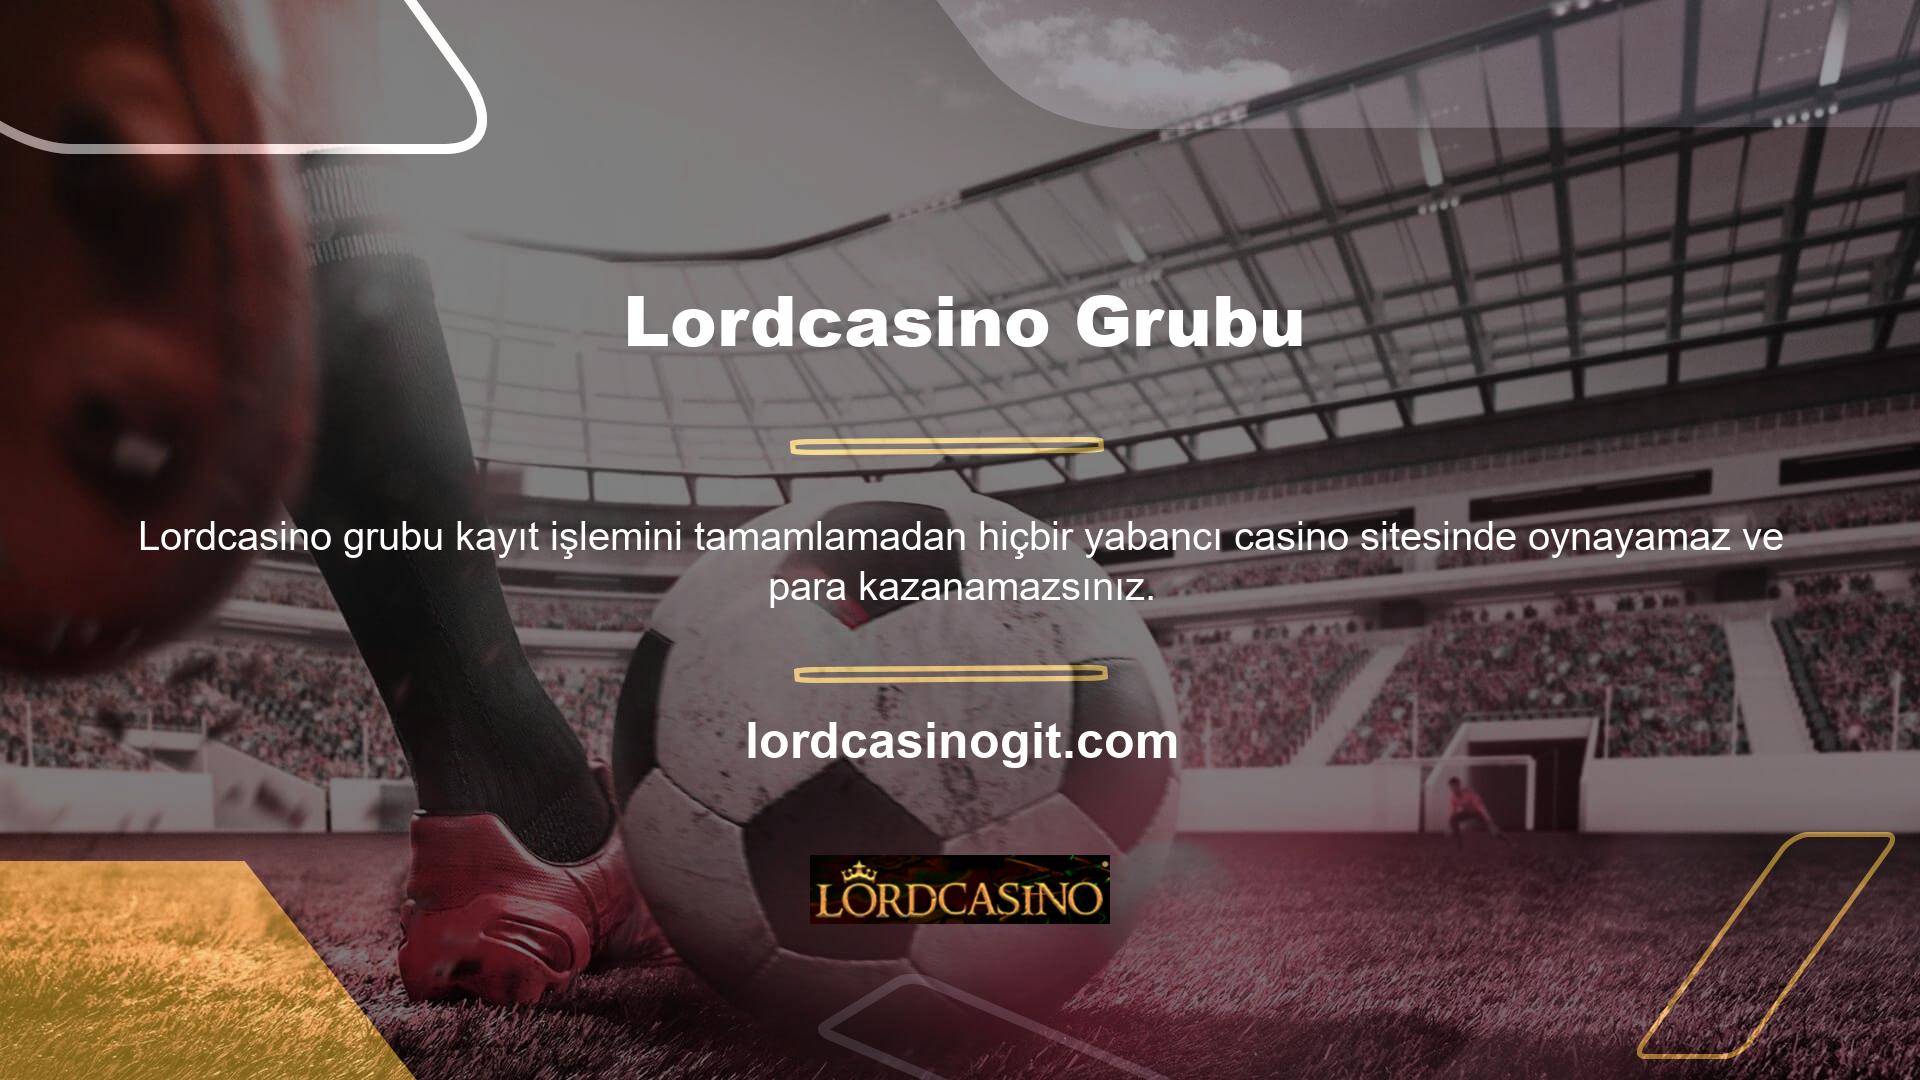 Lordcasino üyelik sayfası, üye olabilmek için mevcut bahis sitesi giriş adresinizi girmenizi gerektirir